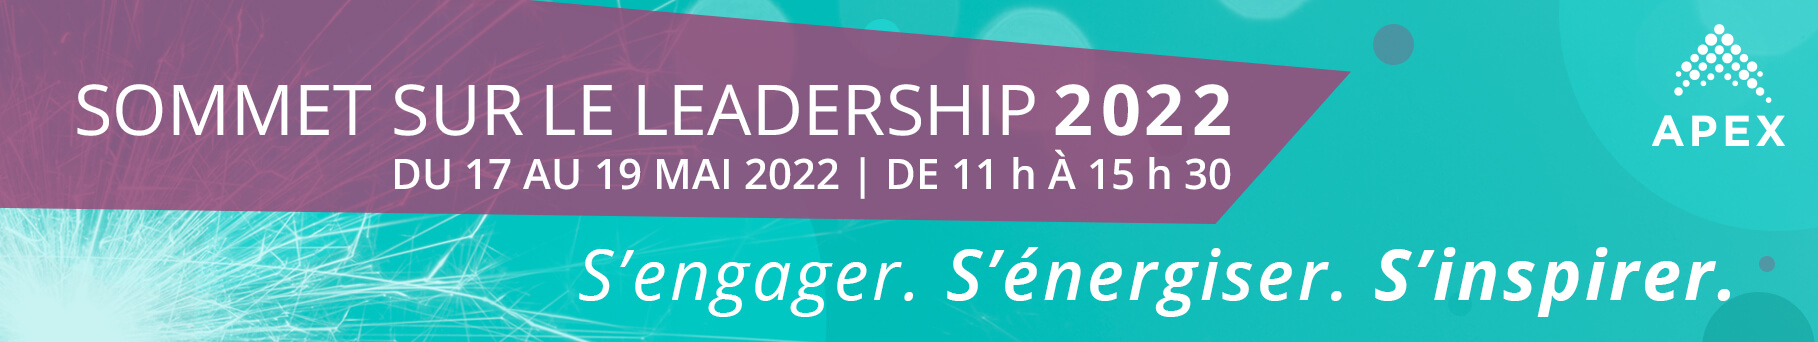 Sommet sur le Leadership 2022